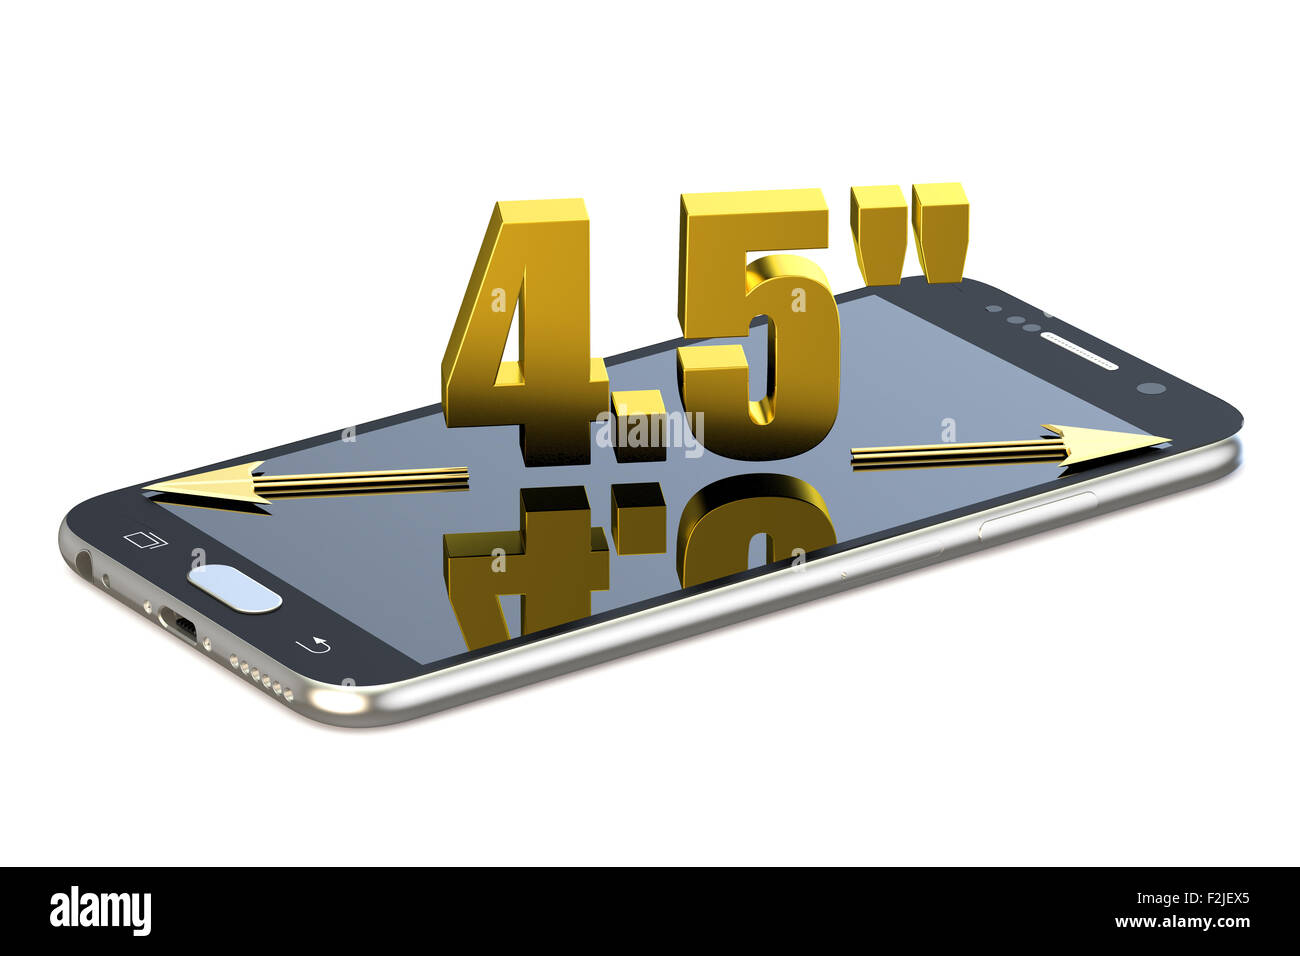 Smartphone avec 4,5 pouces de diagonale isolé sur fond blanc Banque D'Images